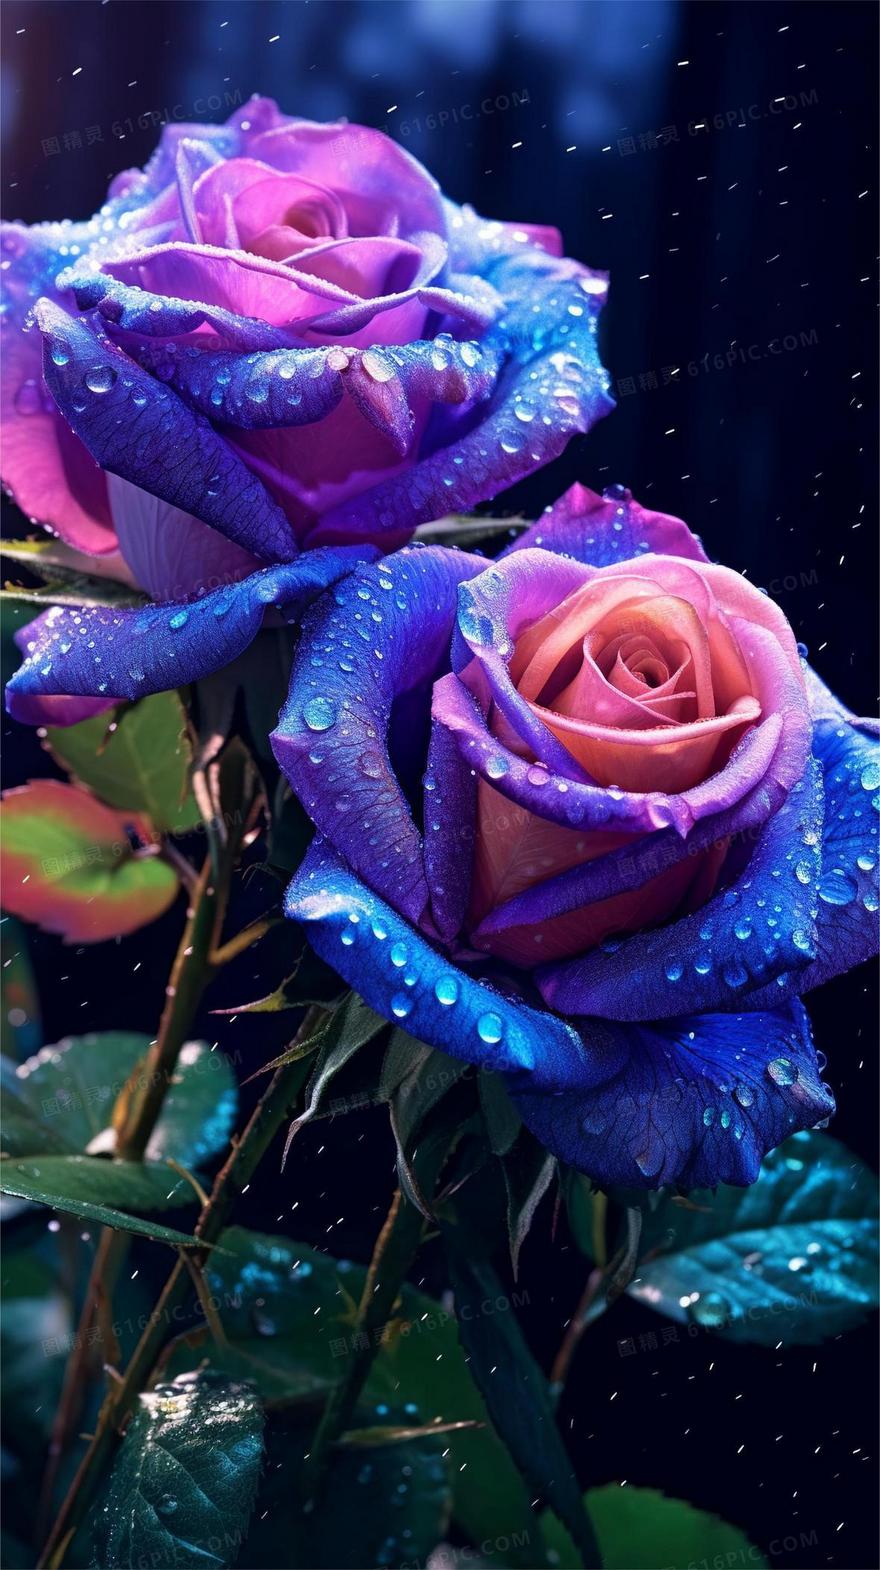 沾着水珠的紫色玫瑰花